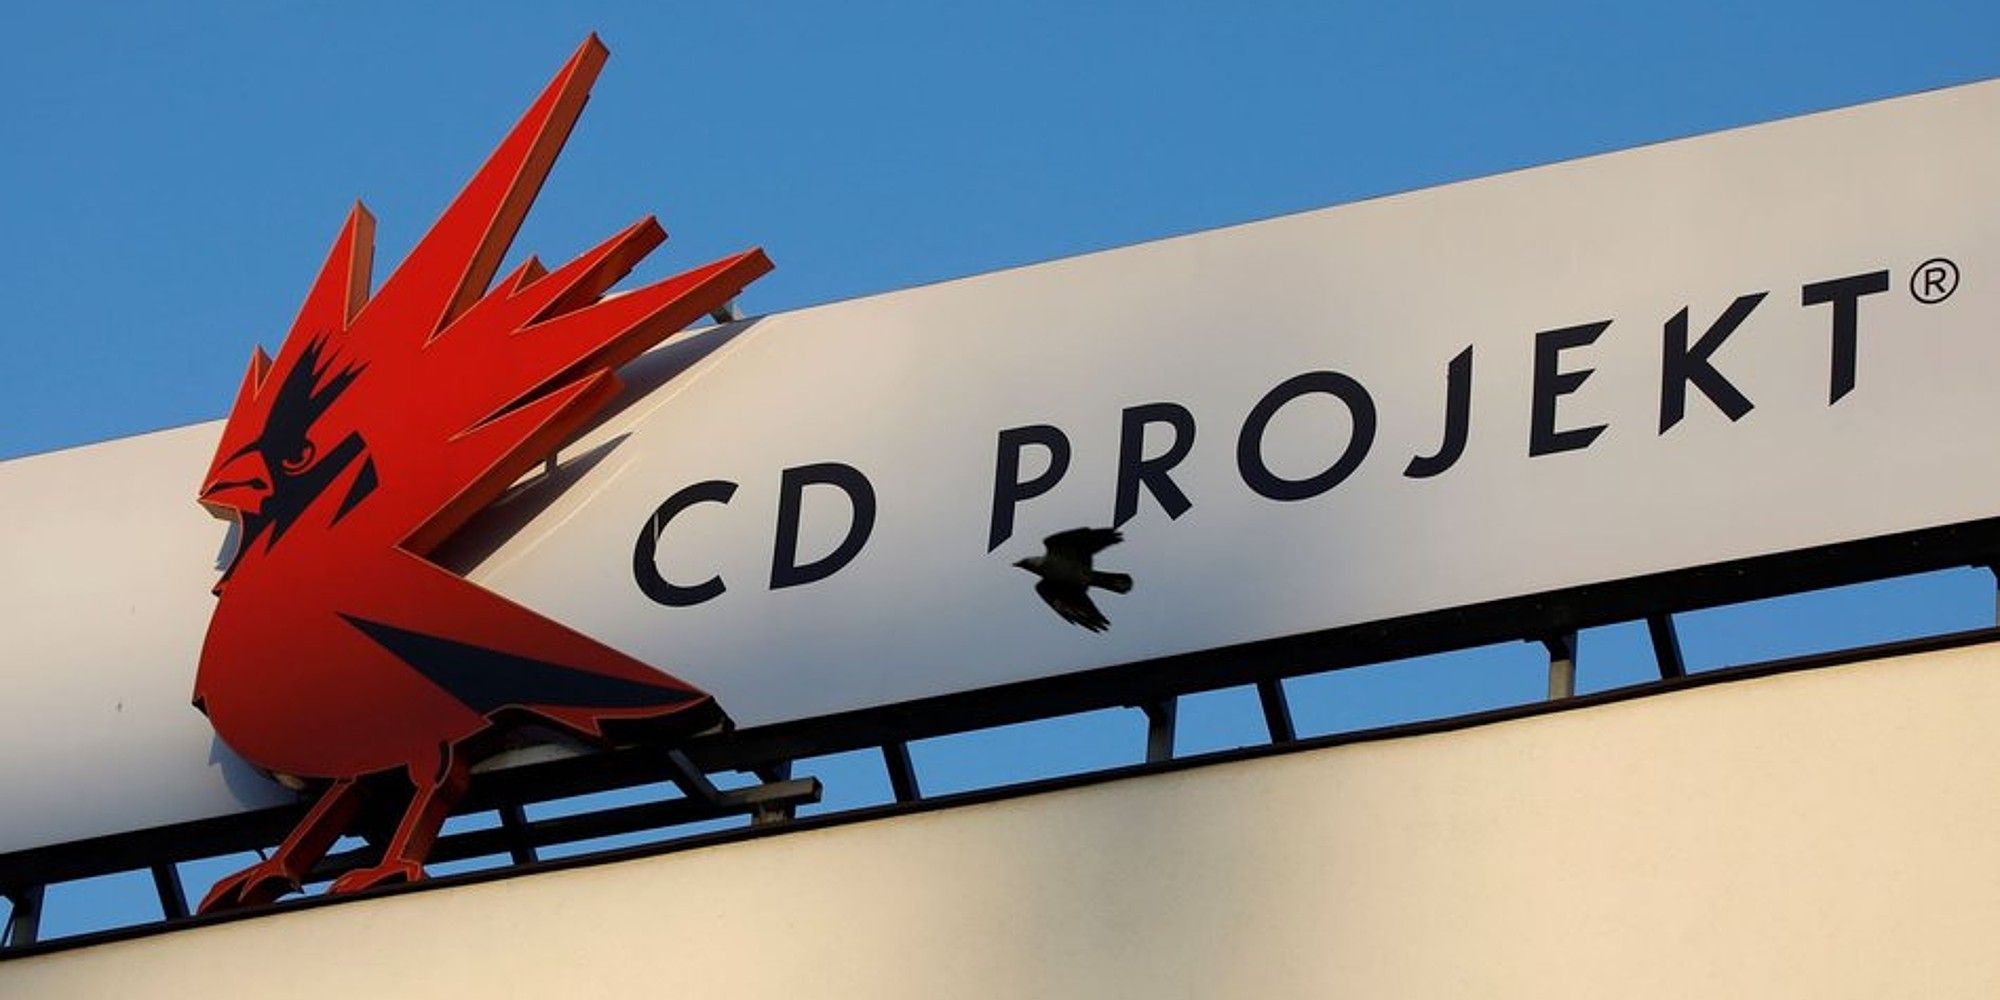 CD Projekt Red Office Logo